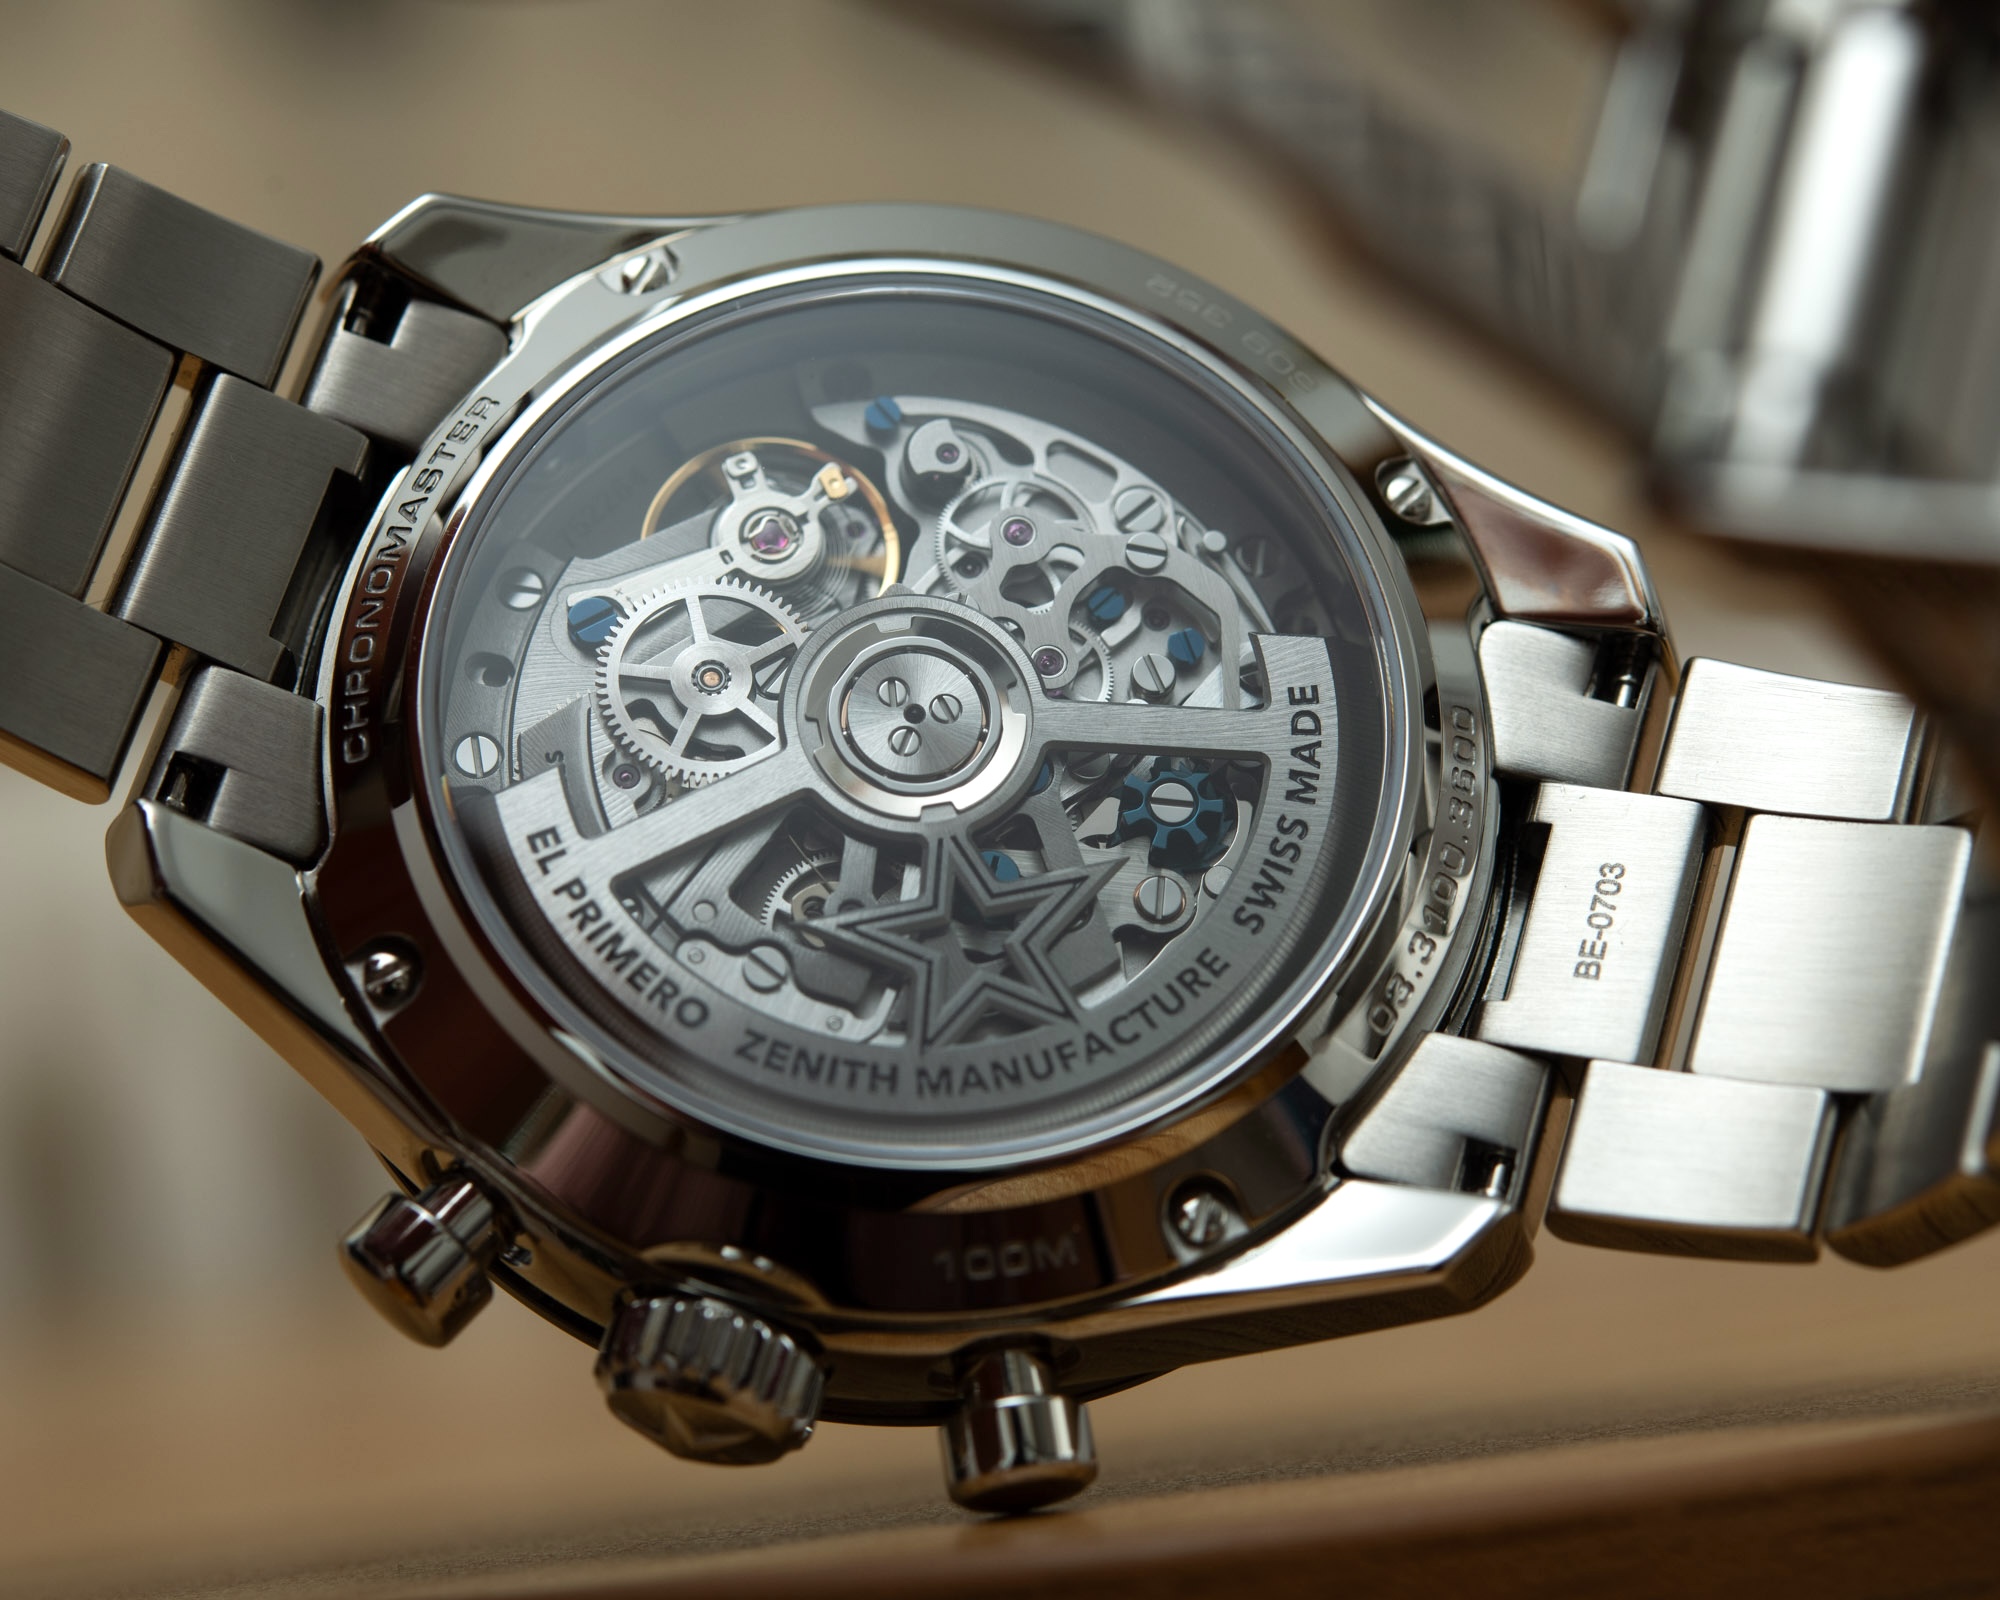 Обзор часов: Zenith Chronomaster Sport как альтернатива стальному Rolex Daytona